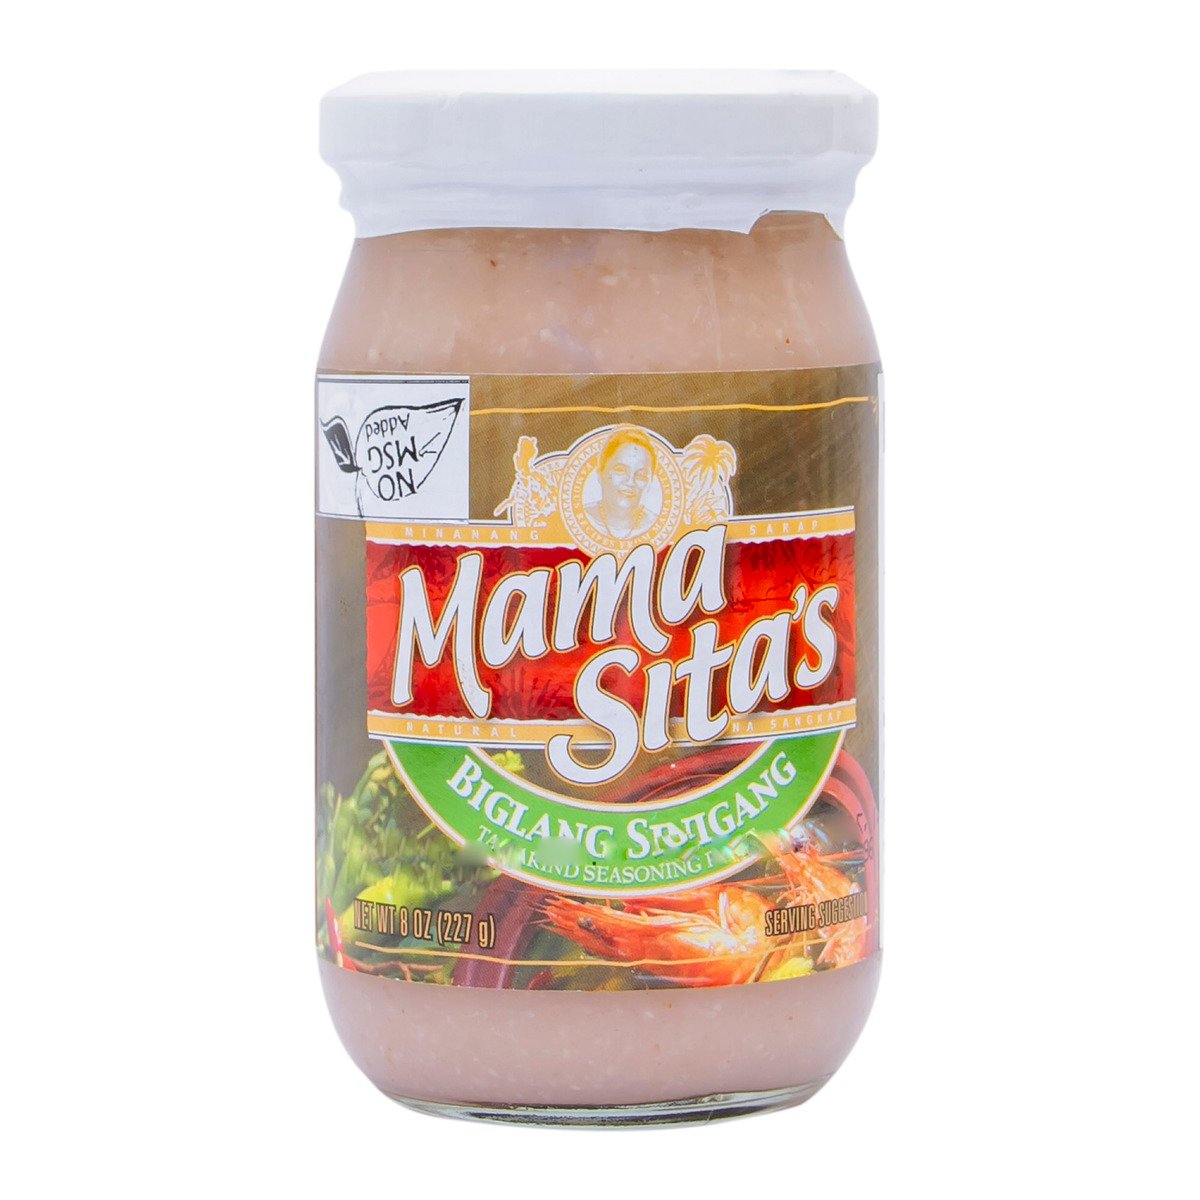 Mama Sita's Biglang Sinigang Tamarind Seasoning Paste, 227 g